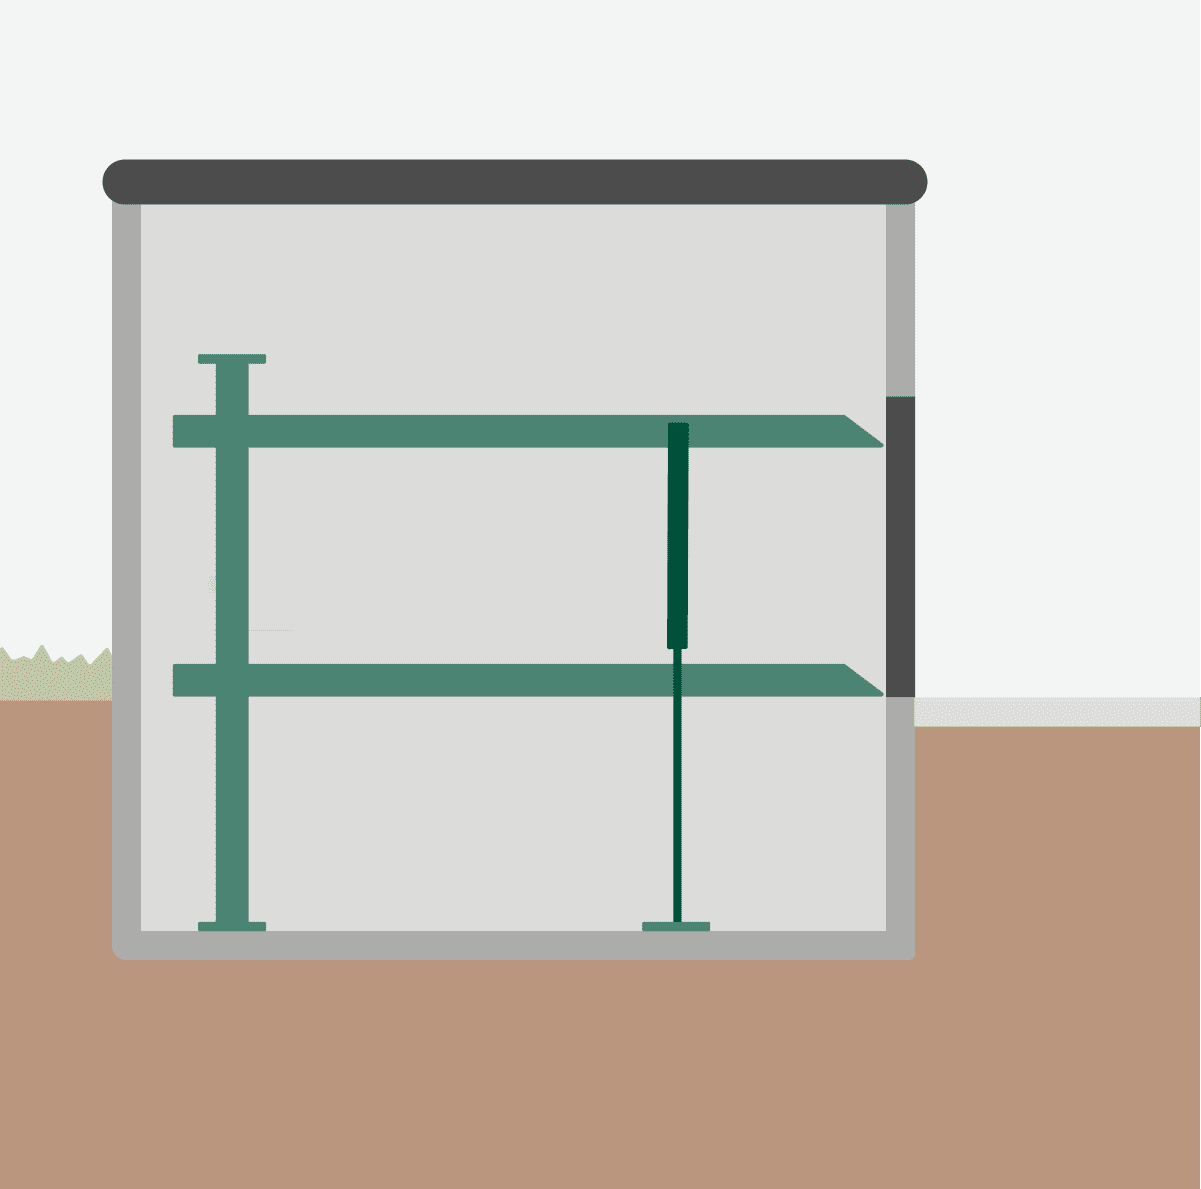 Duplex-Garage mit Liftsystem in einer Grube